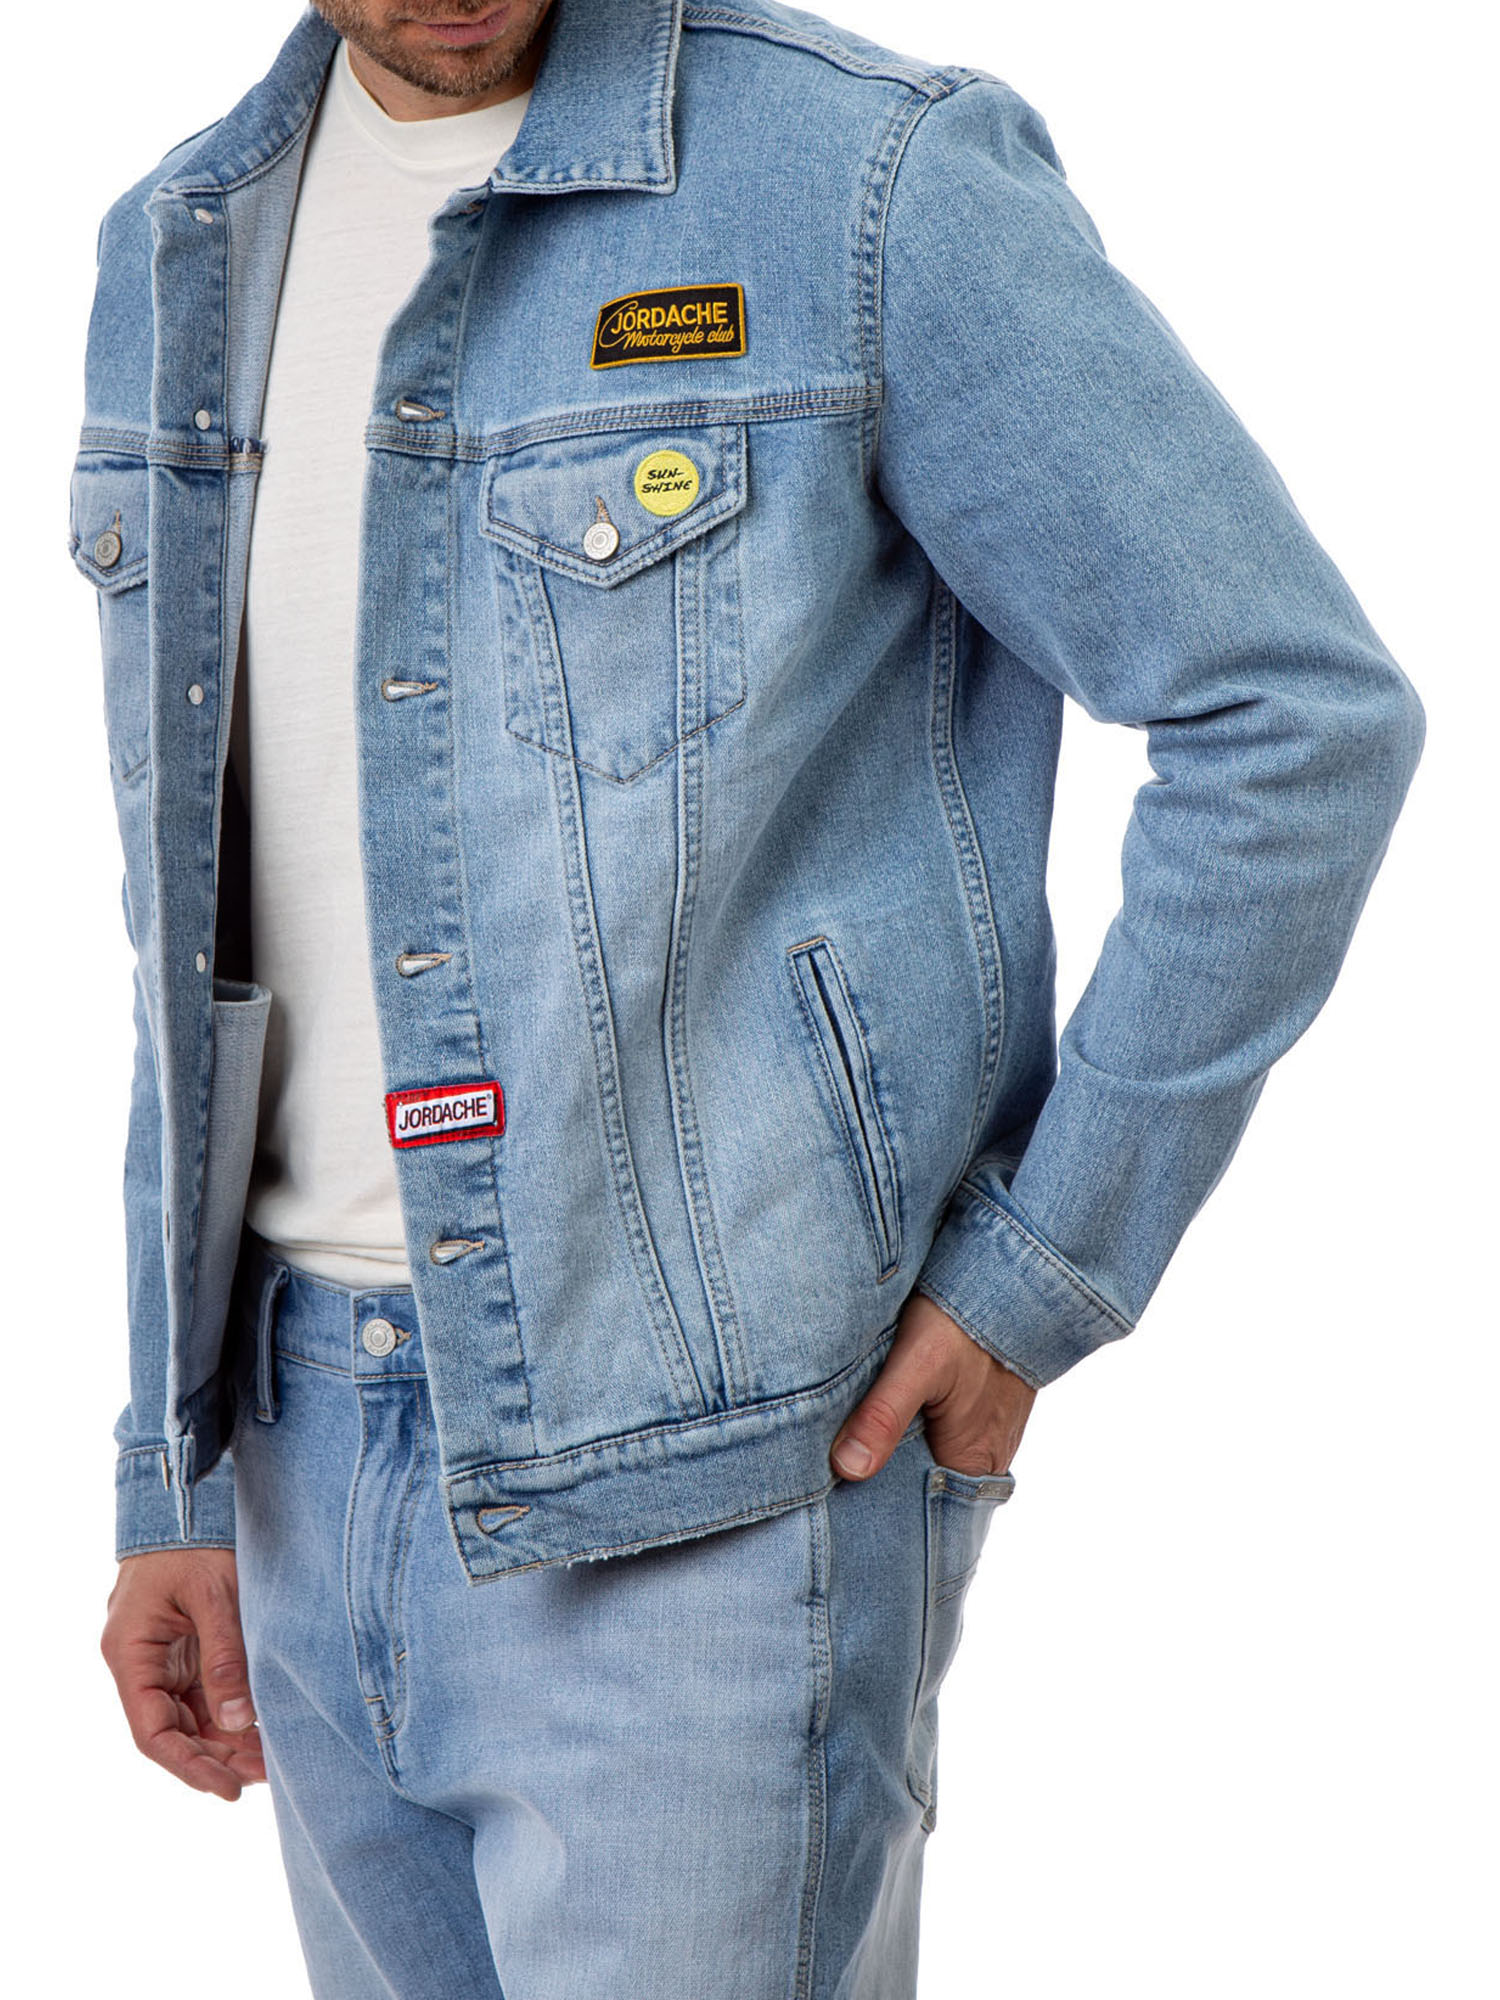 Jordache Vintage Long Sleeve Slim Jacket (Men's) 1 Pack - image 3 of 7